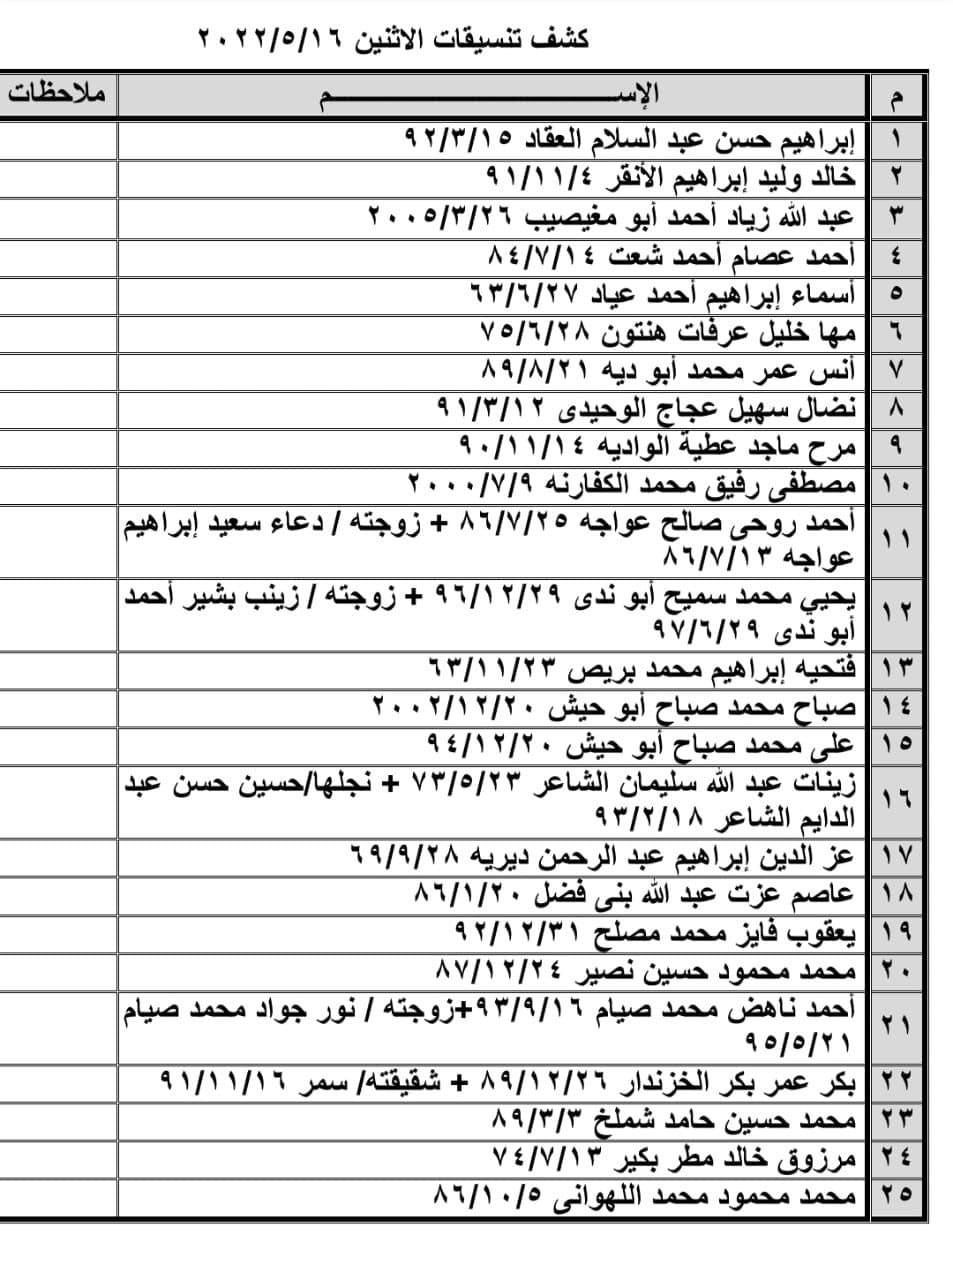 بالصور: كشف "تنسيقات مصرية" للسفر عبر معبر رفح يوم الإثنين 16 مايو 2022